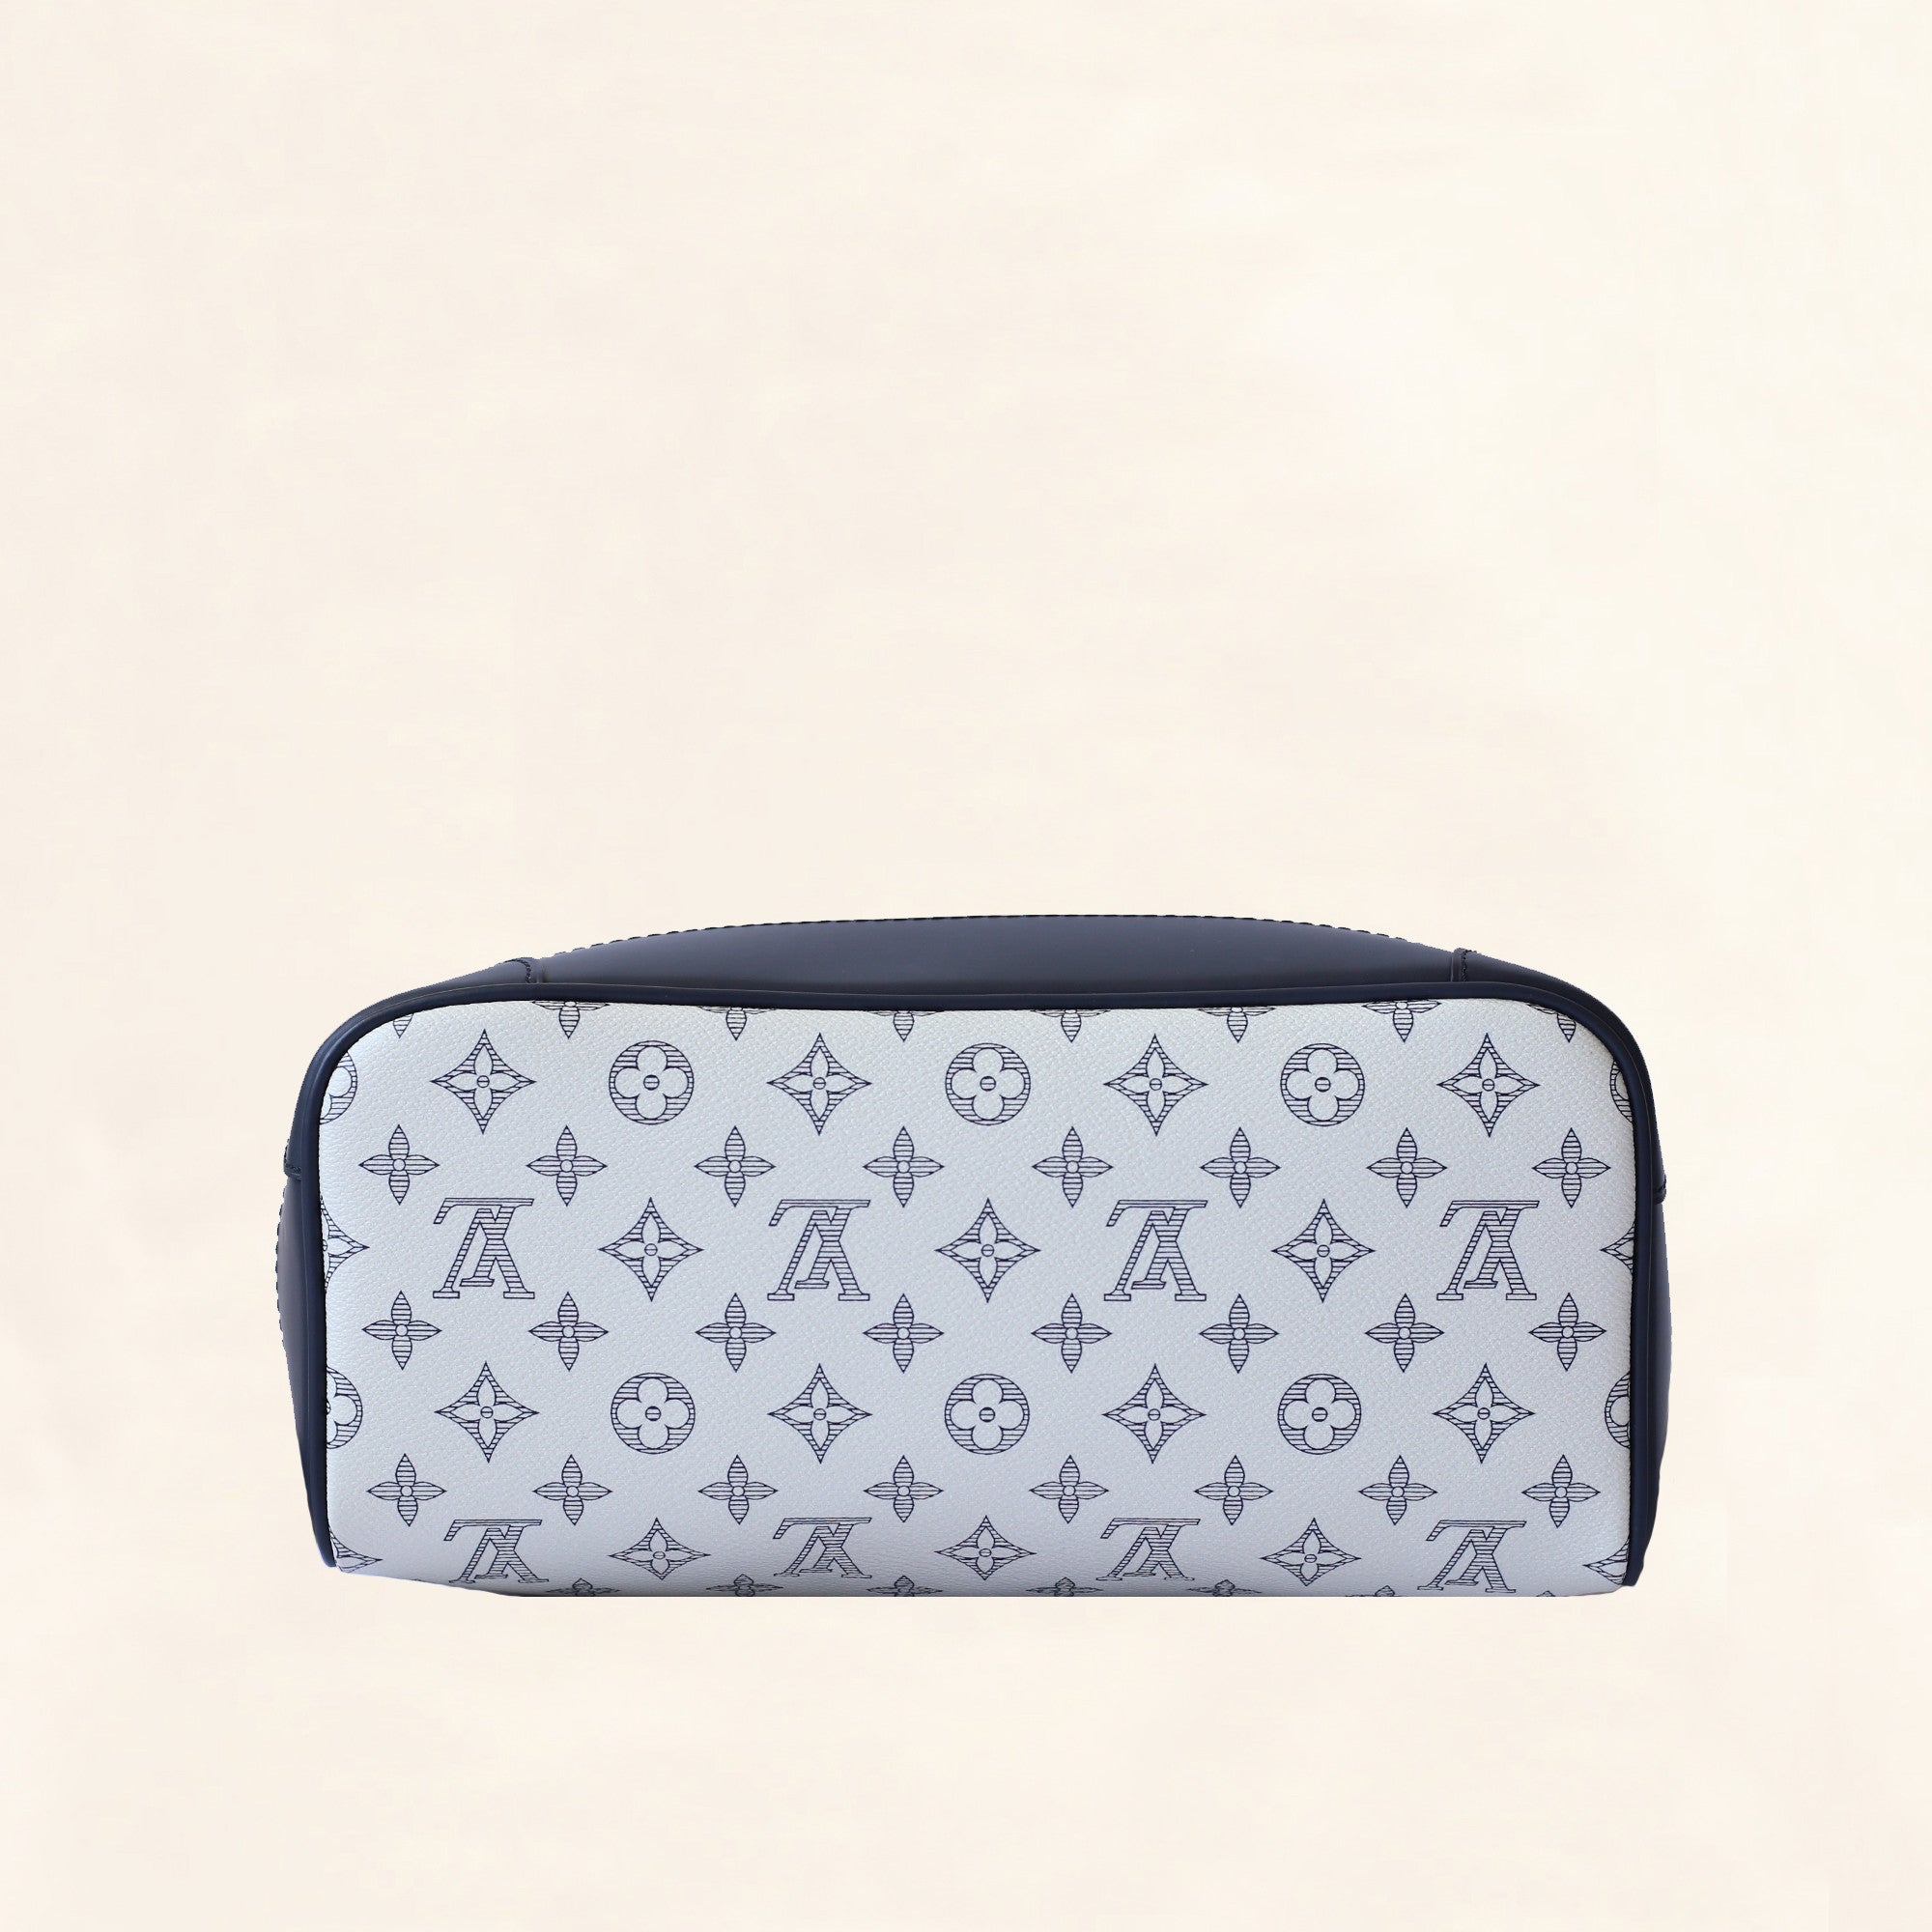 Louis Vuitton Monogram Savanna Elephant Chapman Brothers Canvas Shoulder Bag Blue